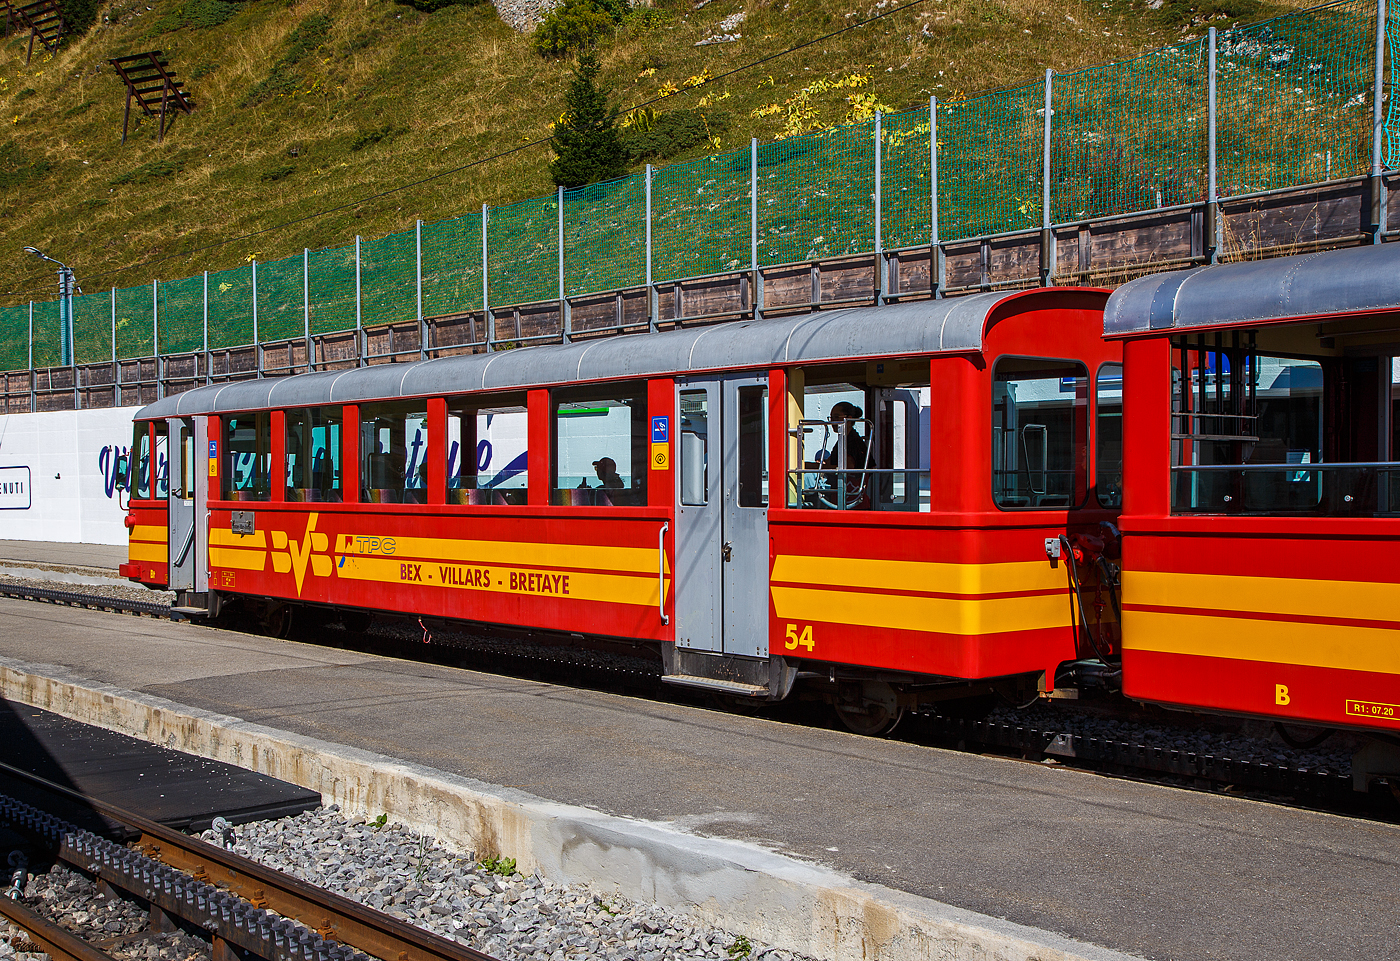 Der vierachsige 2.Klasse Steuerwagen tpc BVB Bt 54, eingereiht in einen Personenzug vor dem Wagen B 51und der Lok 4/4 32 „Villars“ am 10 September 2023 im Bergbahnhof Col-de-Bretaye (1.808 m ü. M.).

Der Wagen wurde 1953 von der SIG (Schweizerische Industrie-Gesellschaft) in Neuhausen am Rheinfall gebaut, die Elektrik ist von der MFO (Maschinenfabrik Oerlikon). Der Wagen hat ein Eigengewicht von 9 t und hat 47 Sitzplätze sowie 50 Stehplätze.

Heute sind diese Garnituren nicht mehr im Planeinsatz. Hier an dem Wochenende (08 bis 10 September 2023) feiert die TPC 125 Jahre BVB! (Les TPC célèbrent les 125 ans du BVB!). So kamen auch historische Züge und Triebwagen zum Einsatz.
